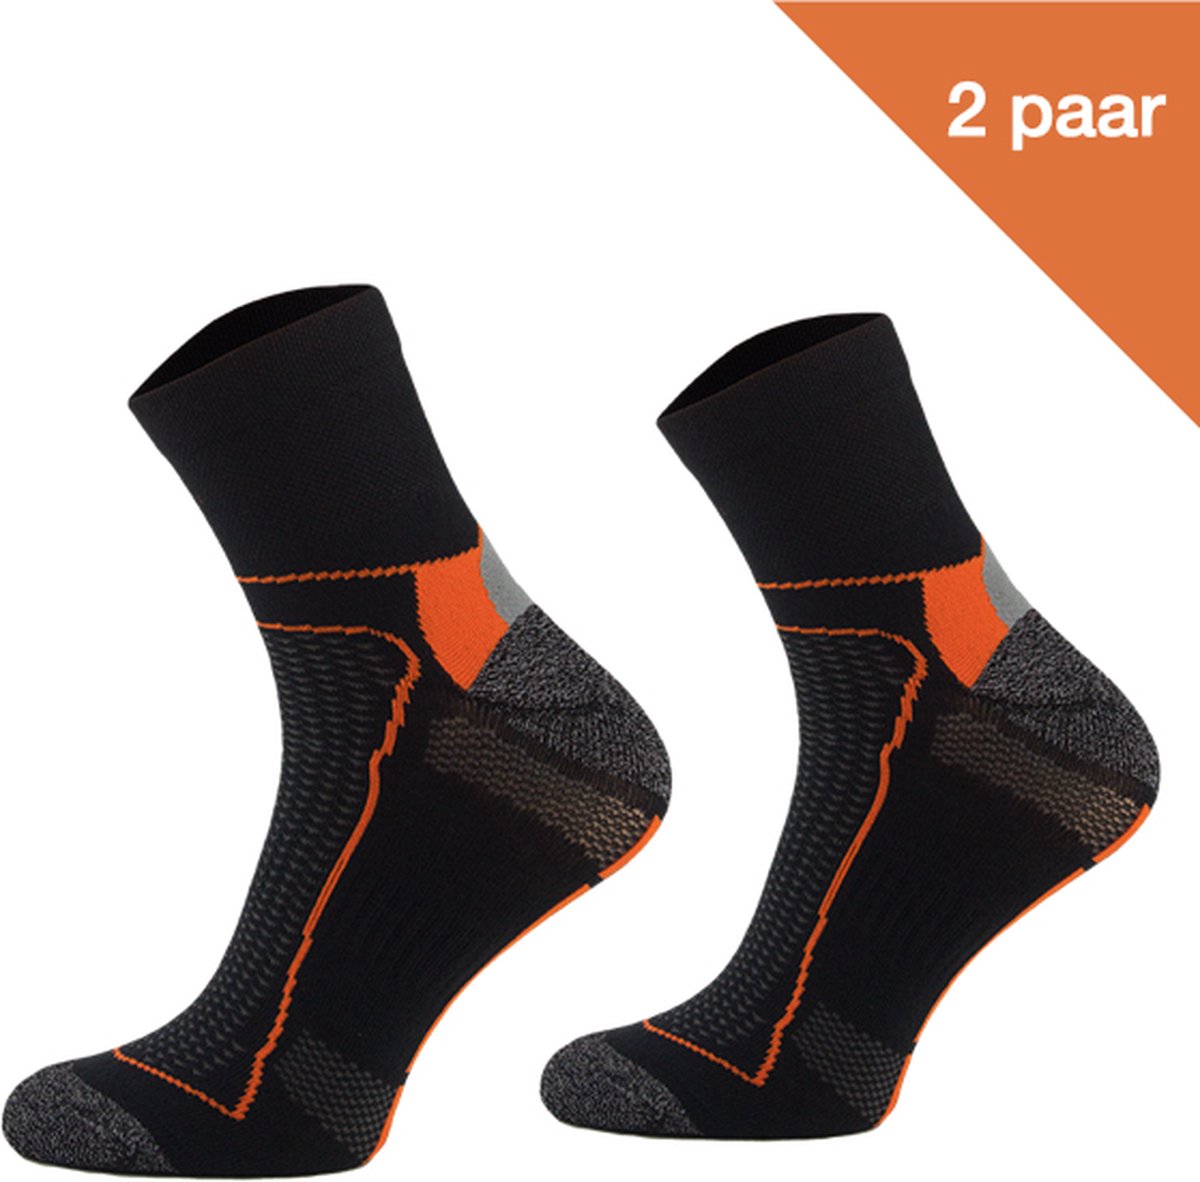 Comodo Fietssokken Polyester BIK1 - Zwart/Oranje - 2 paar - Maat 39-42